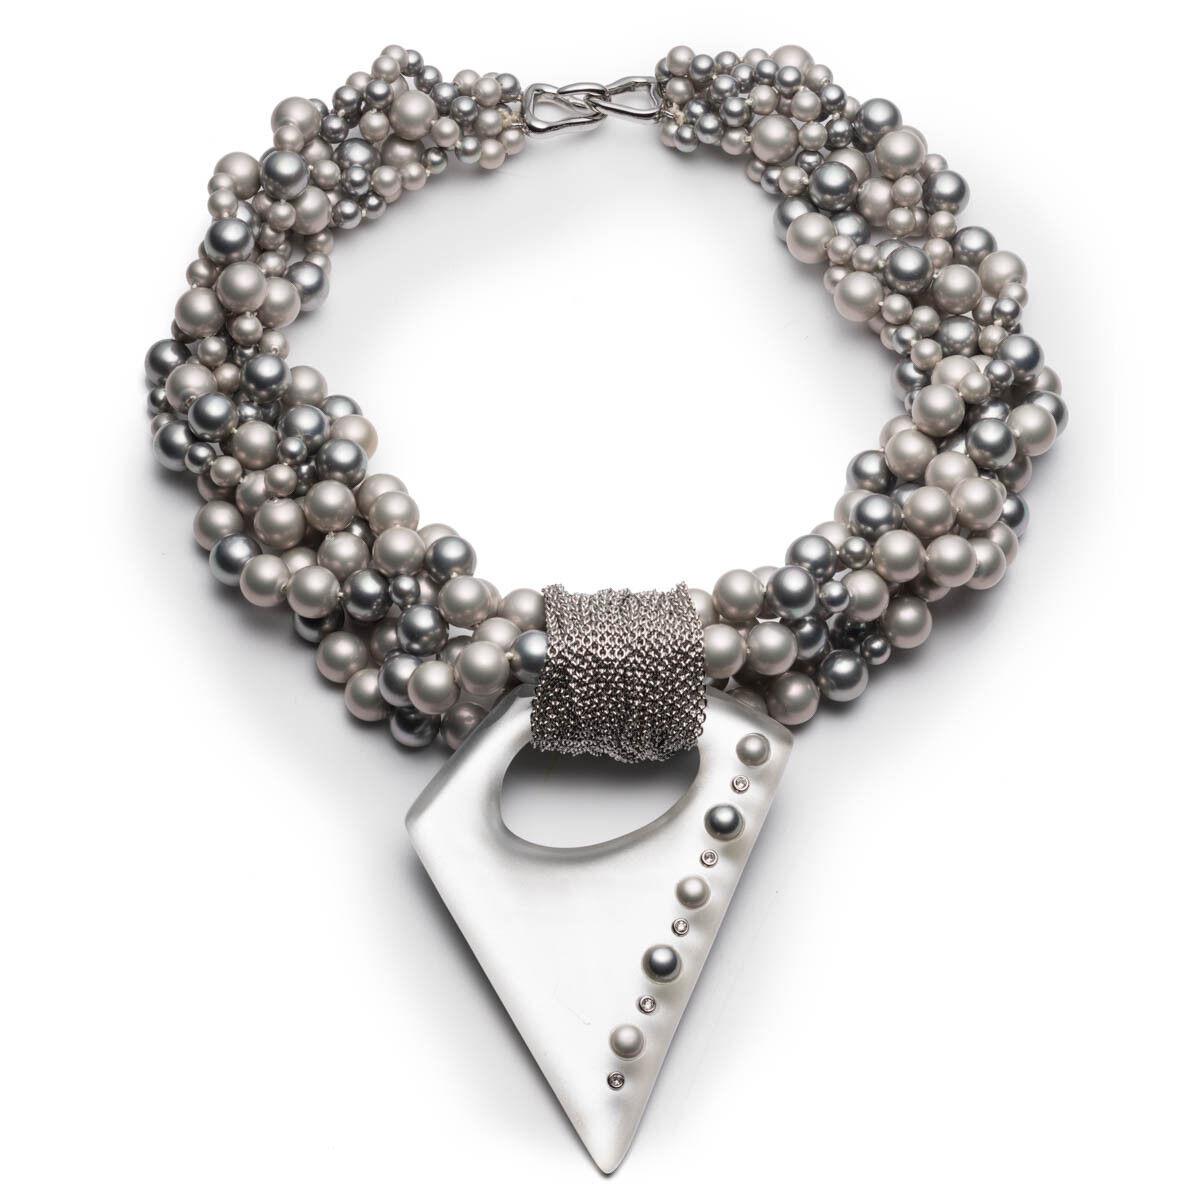 Einfach schön! Chic und stilvoll Multi Strang Perle beschlagenen Silber Lucite Drop Anhänger Halskette machen diese fabelhafte Designer Halskette von Alexis Bittar. Die Länge beträgt ca. 24